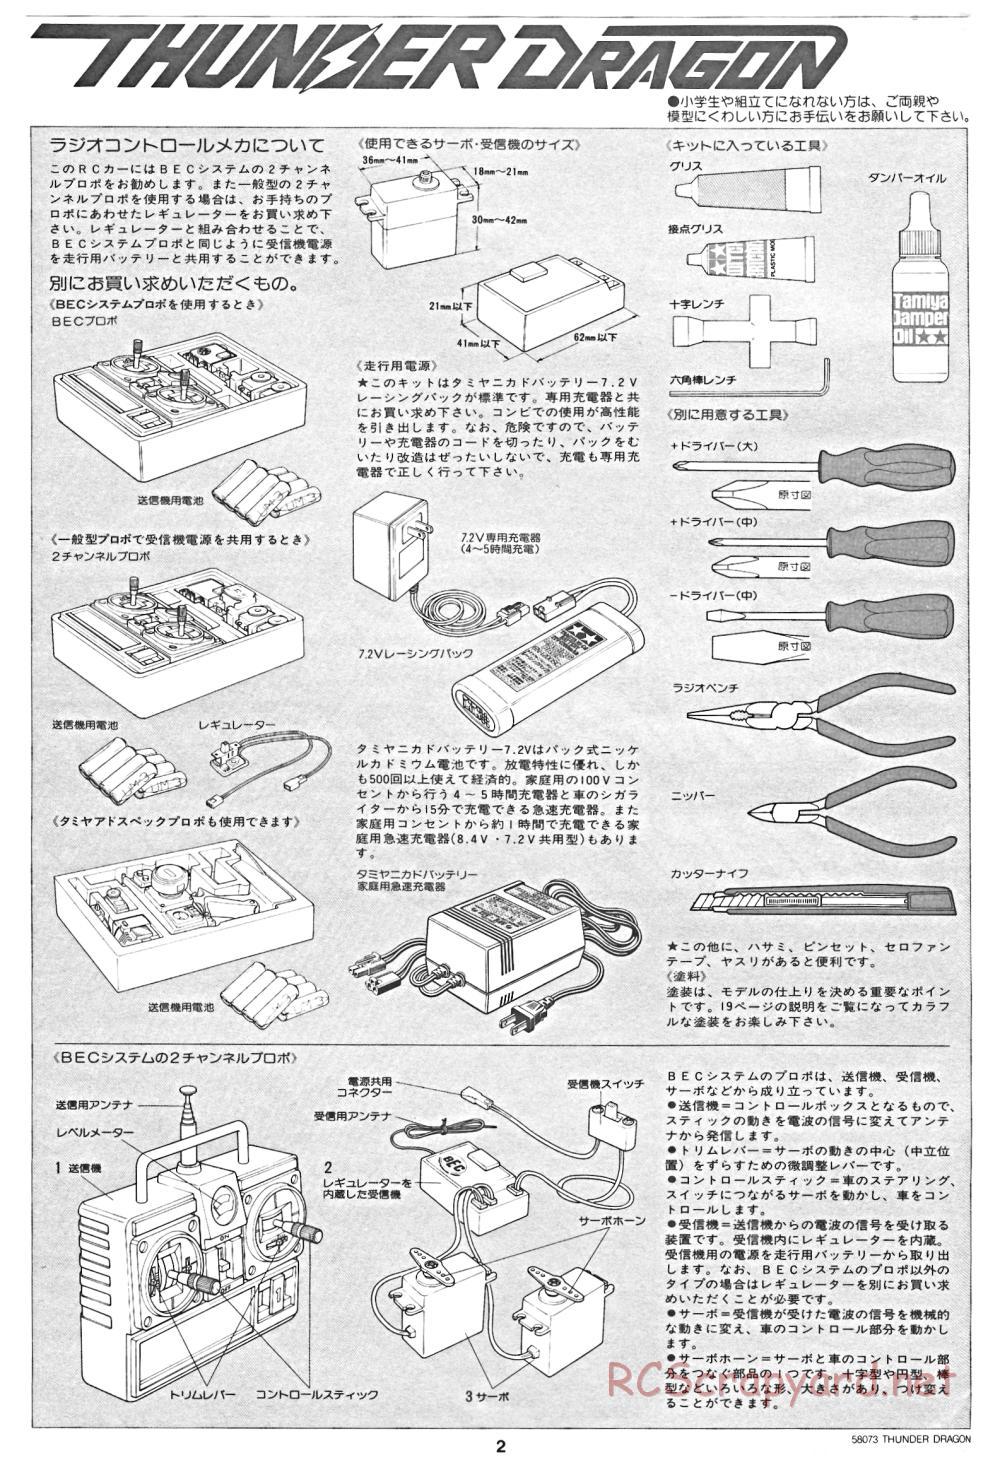 Tamiya - Thunder Dragon - 58073 - Manual - Page 2